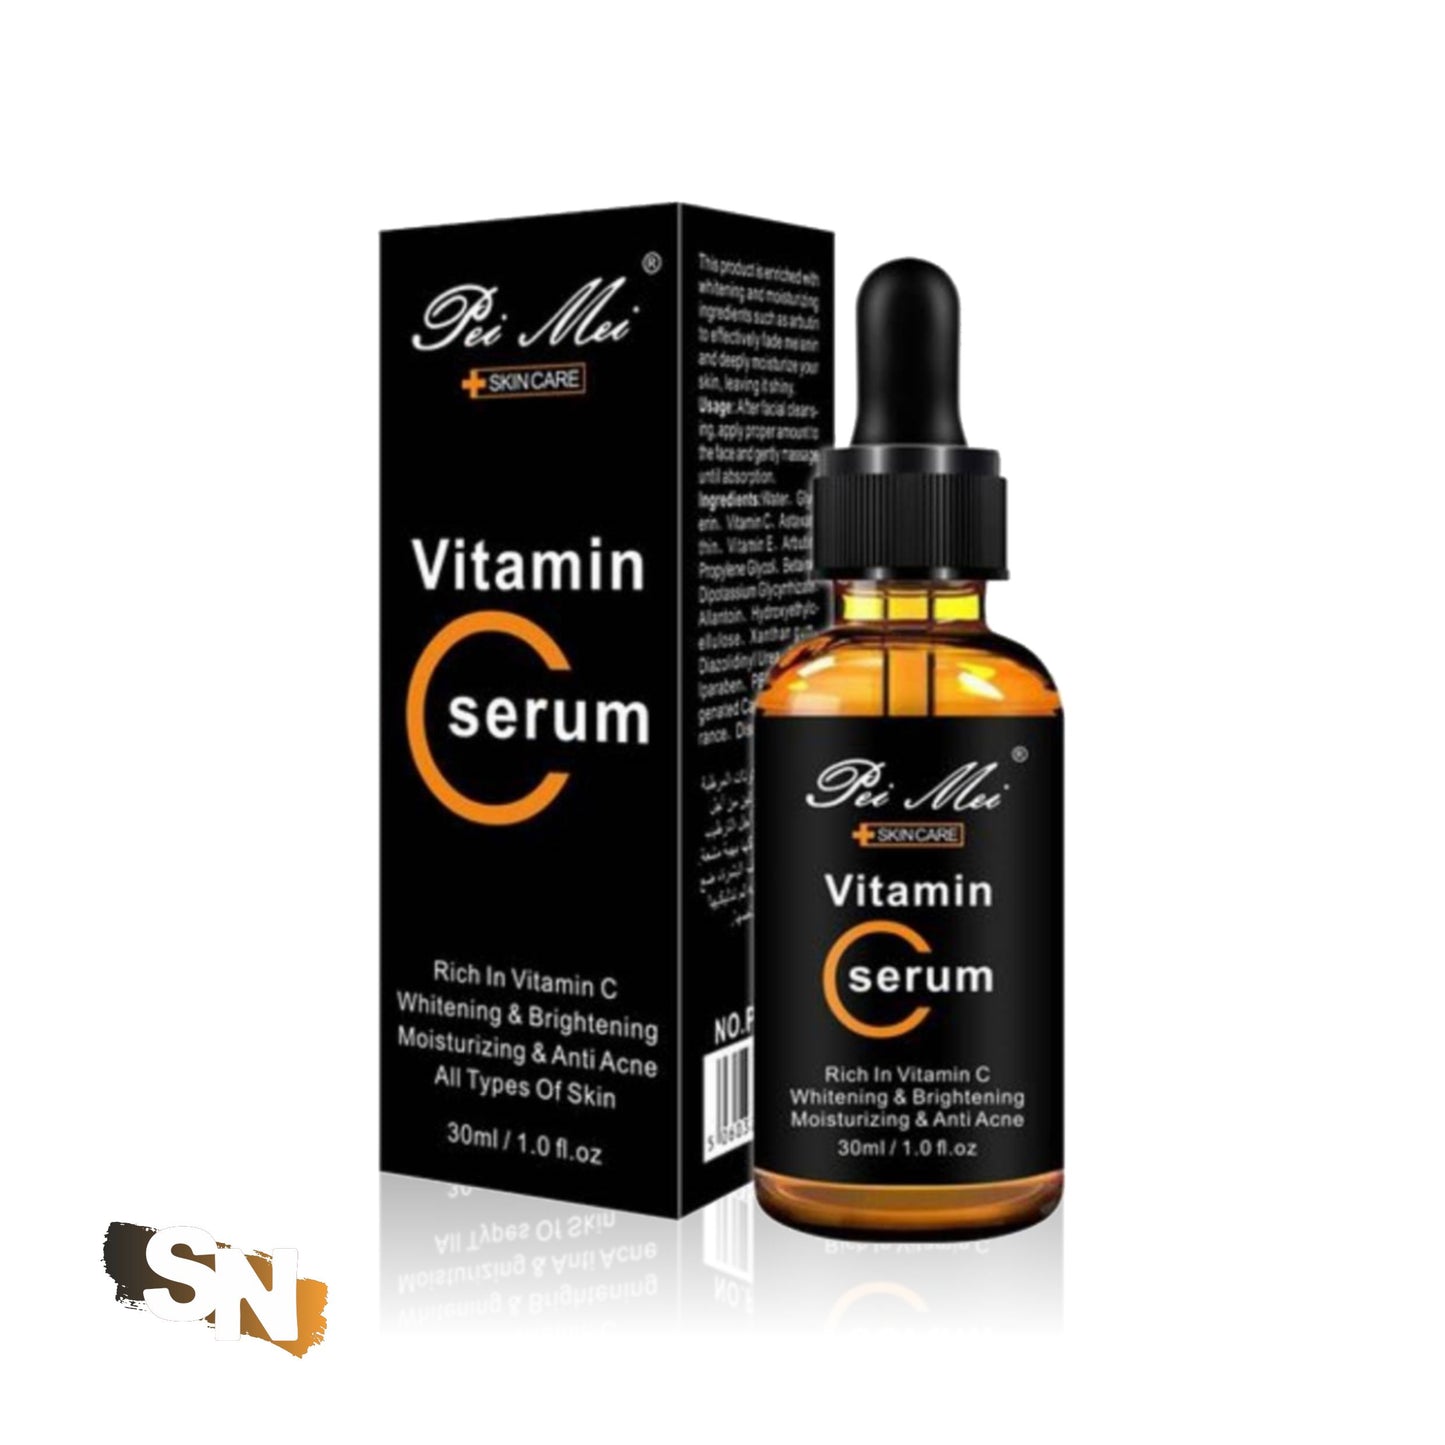 Pei Mei Vitamin C Serum | 30ml